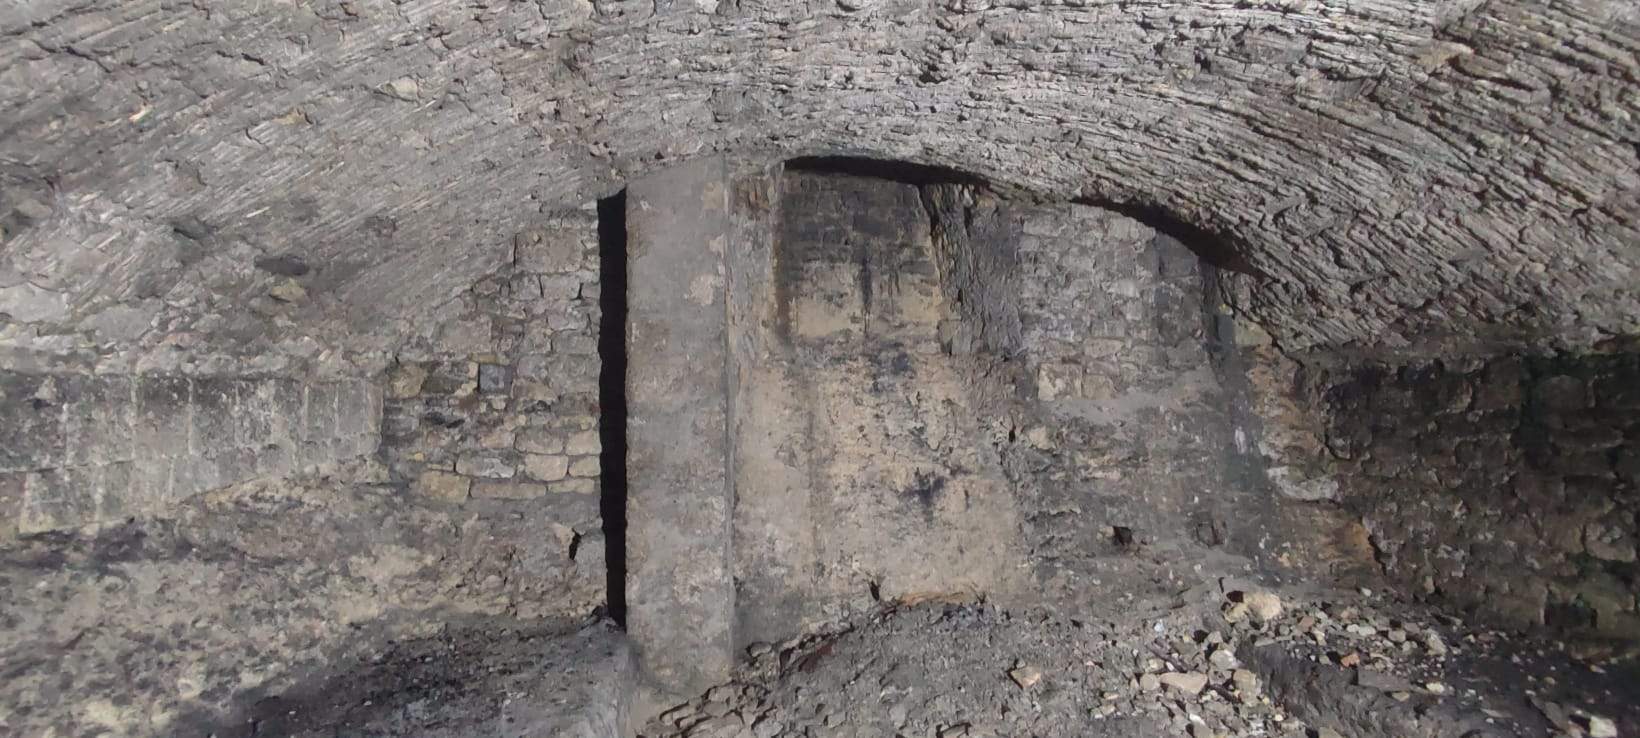 Tarquinia, d'anciennes salles souterraines découvertes sous le nouveau bureau d'enregistrement